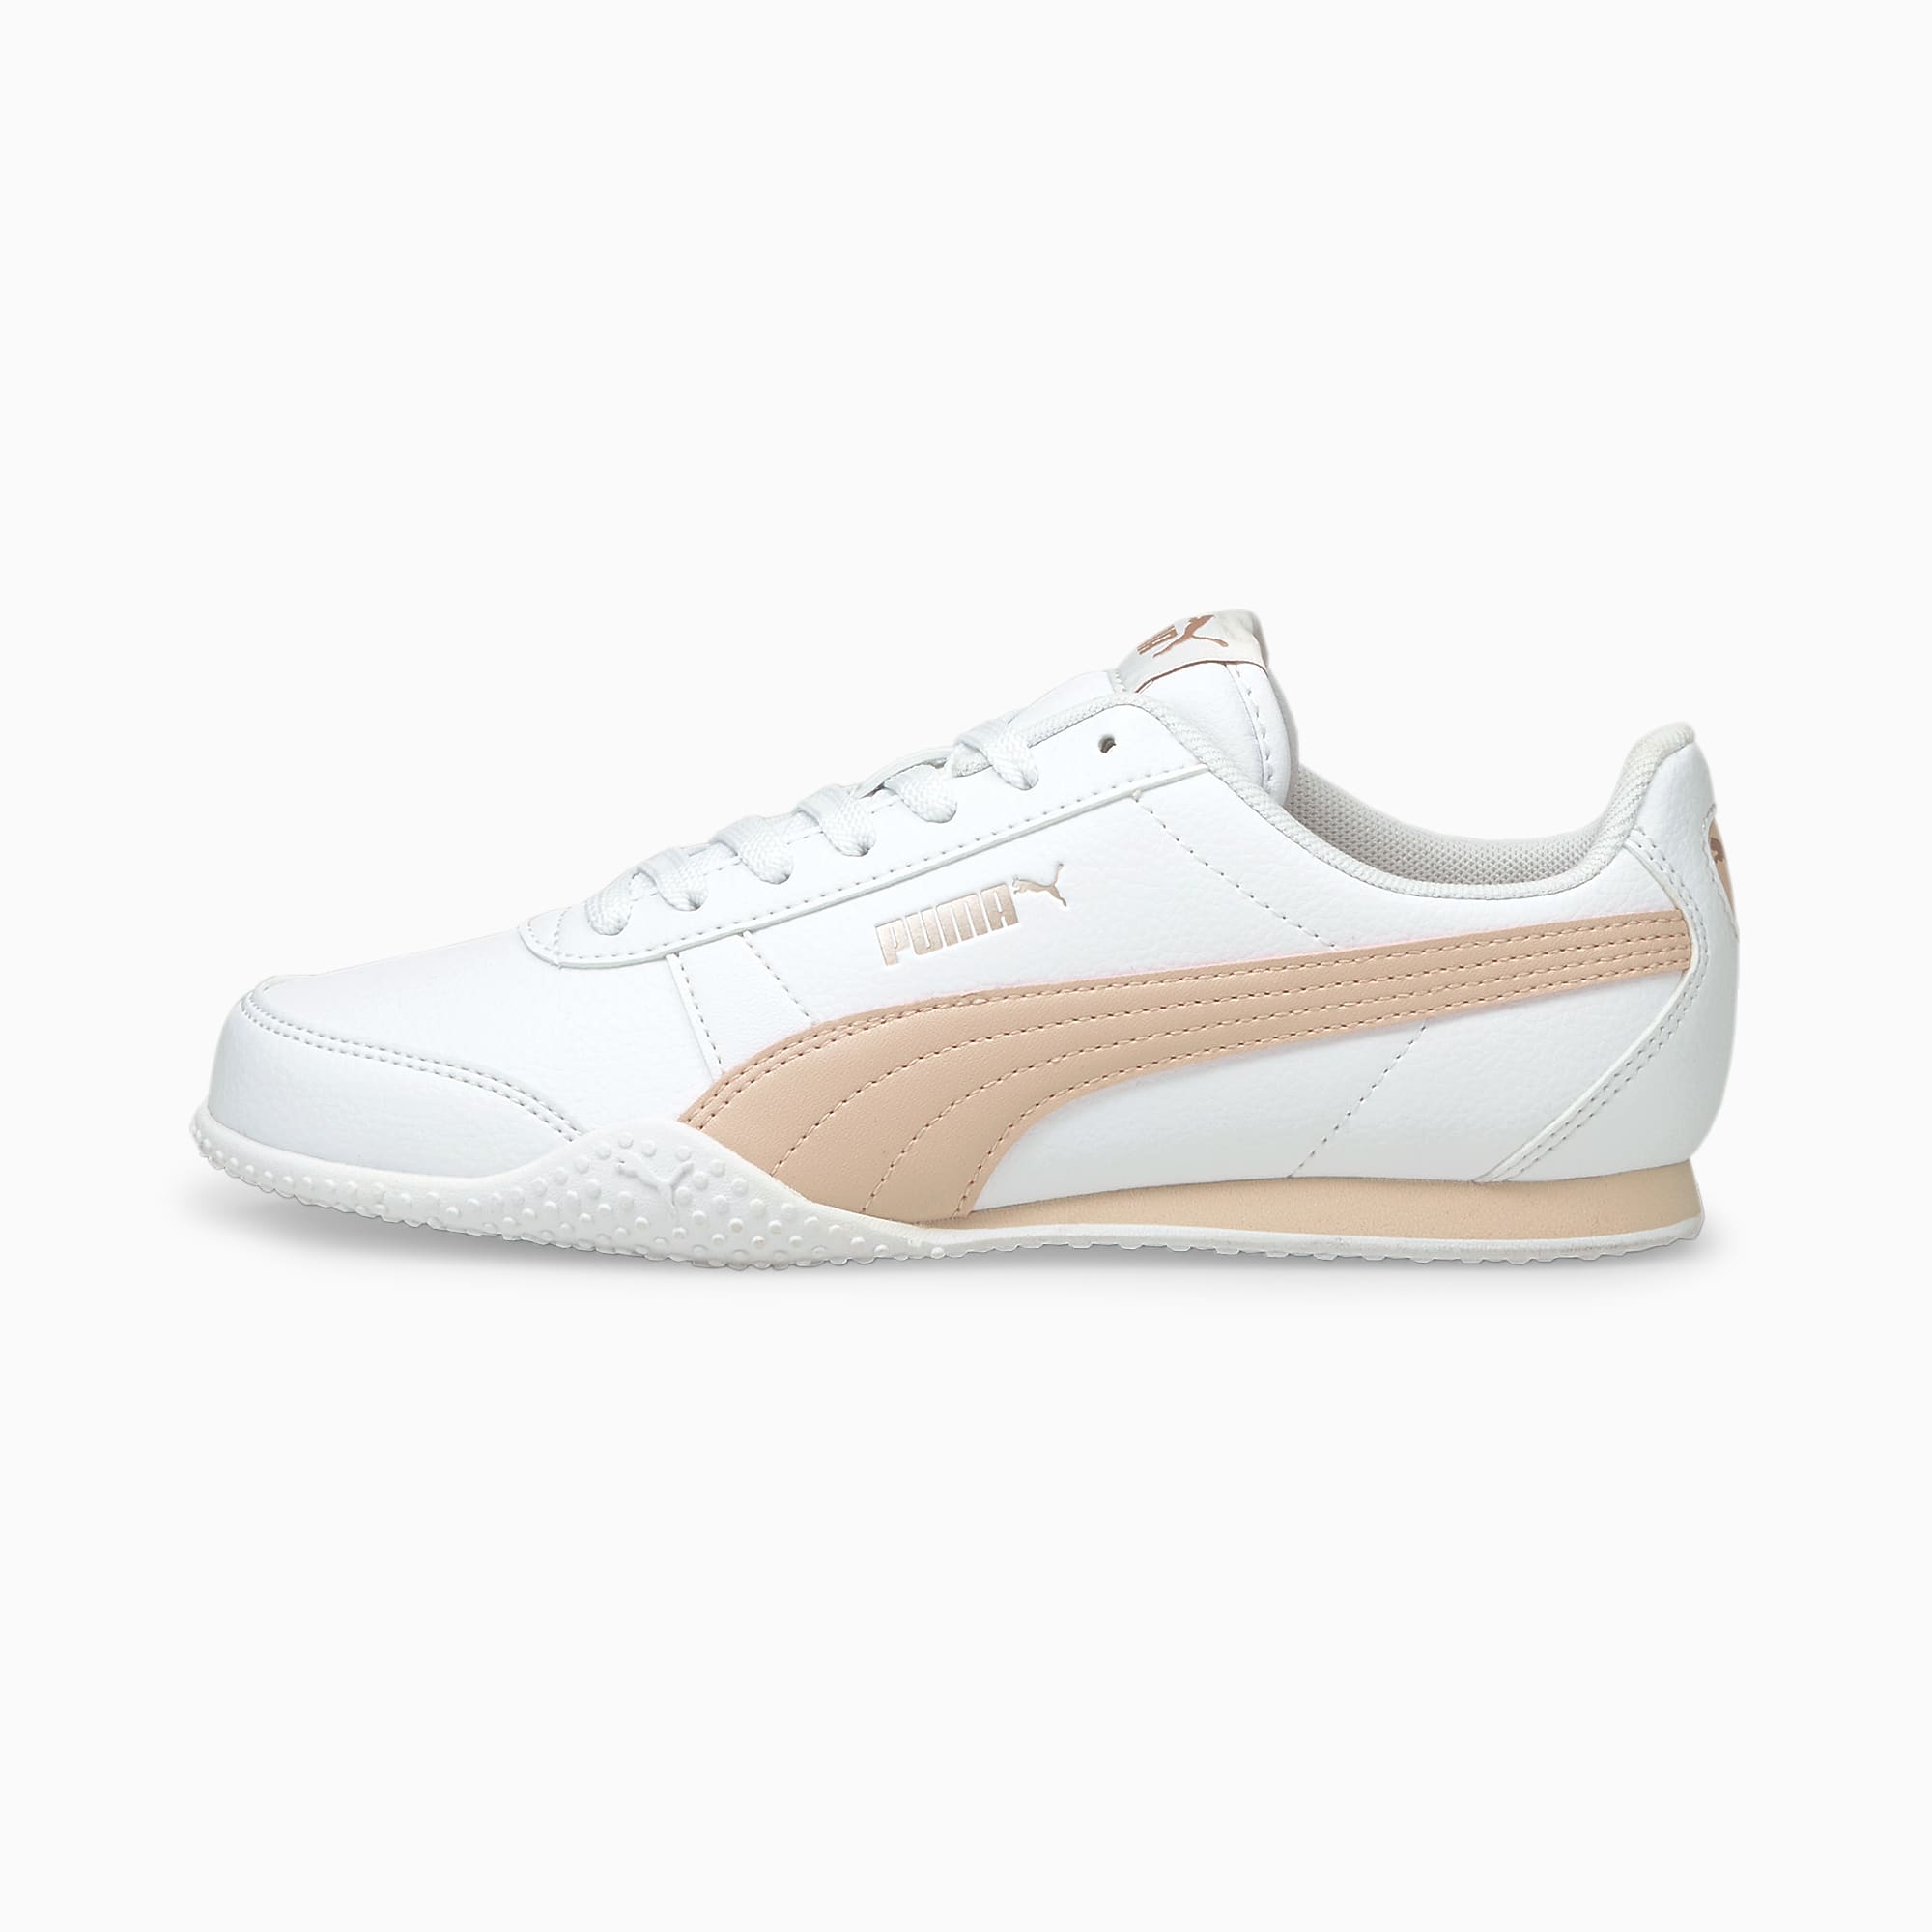 Puma: Bella Women’s Sneakers $17.49